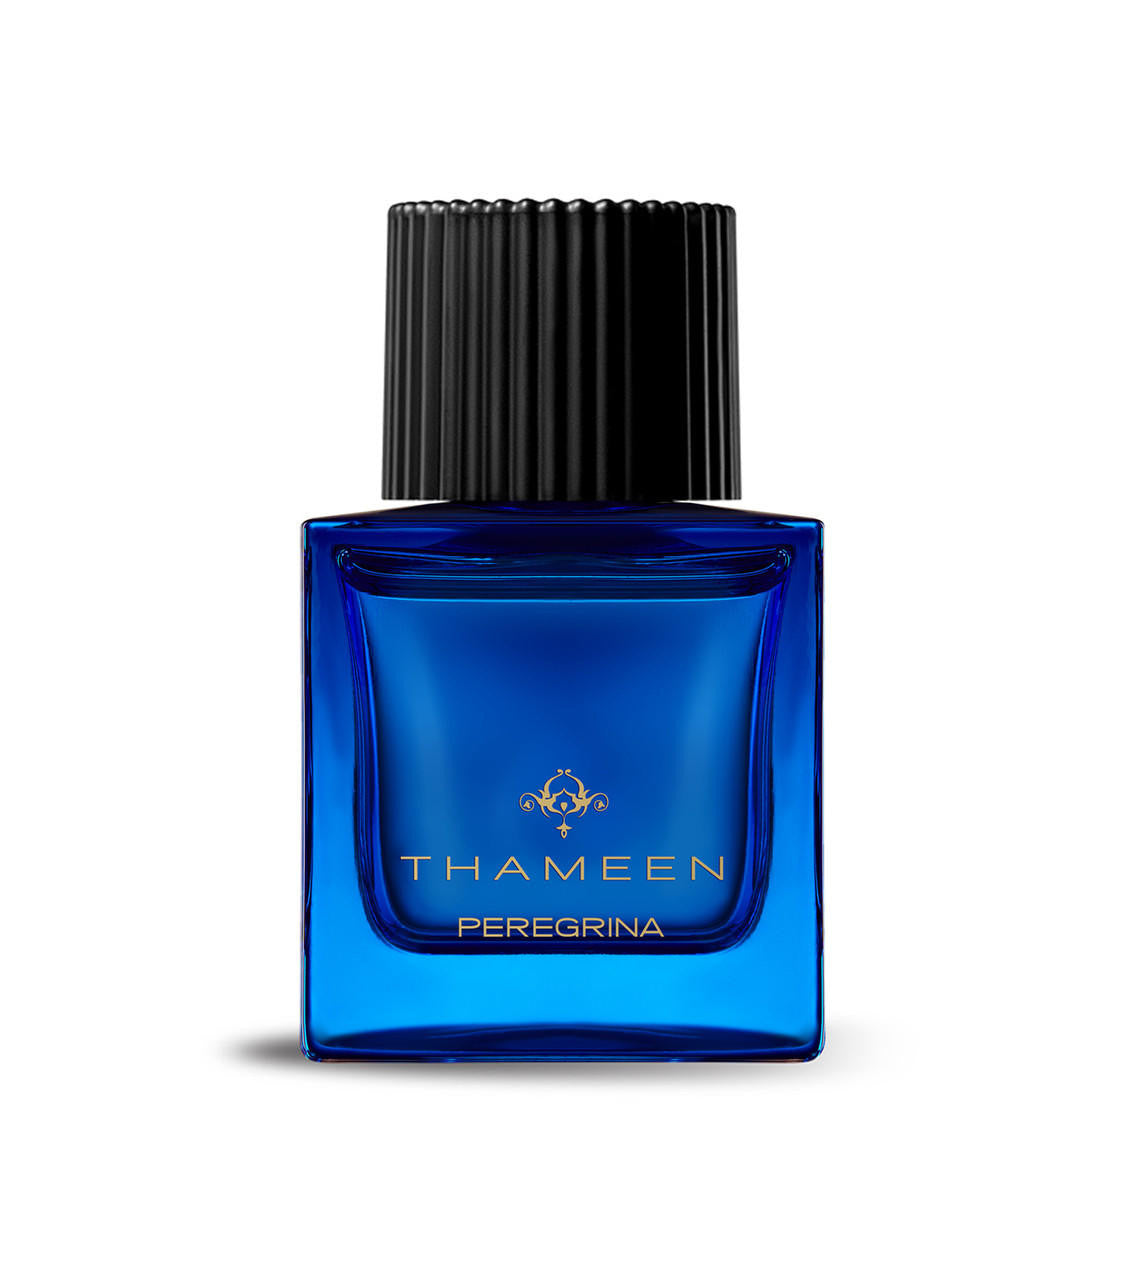  Thameen Peregrina Extrait de Parfum 